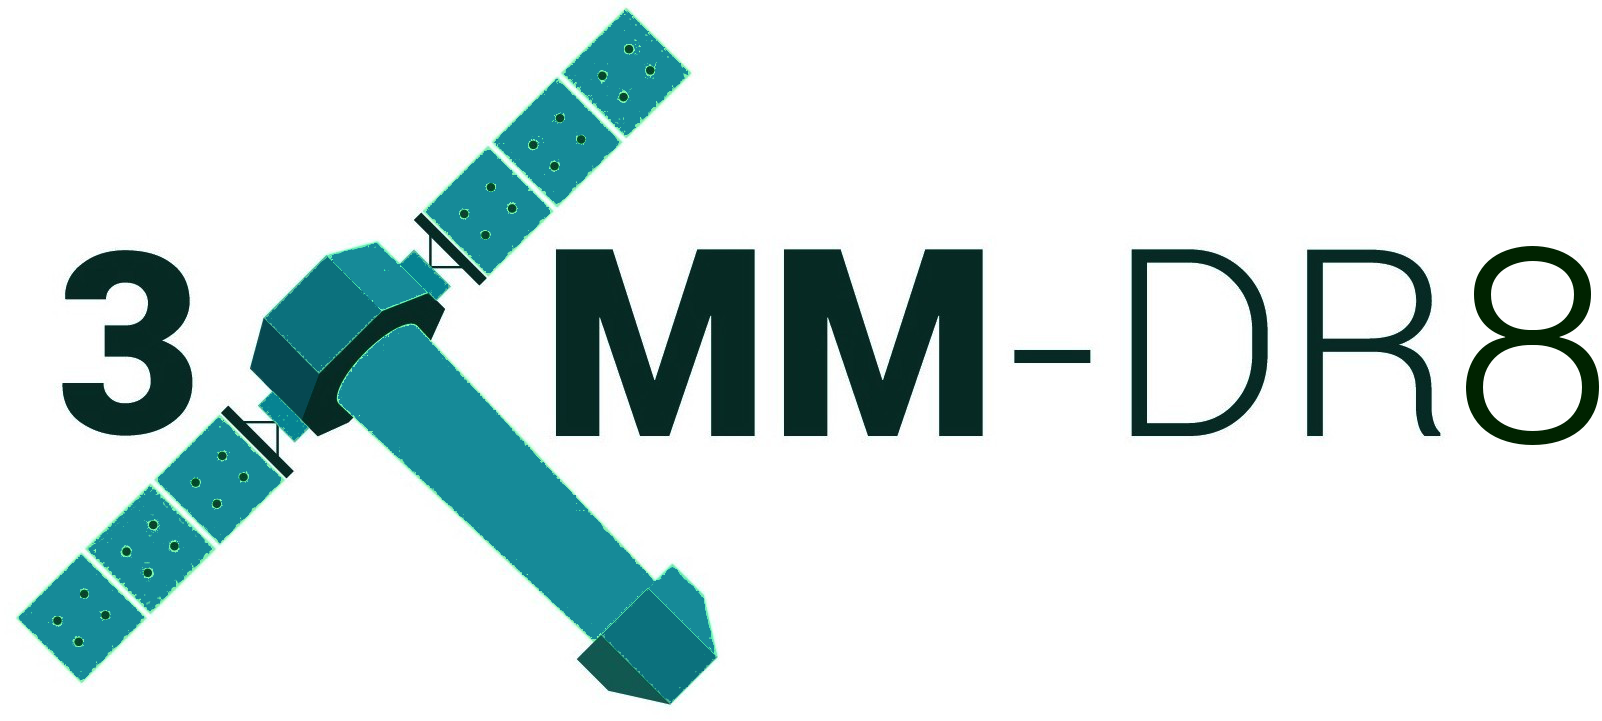 3XMM-DR8 logo